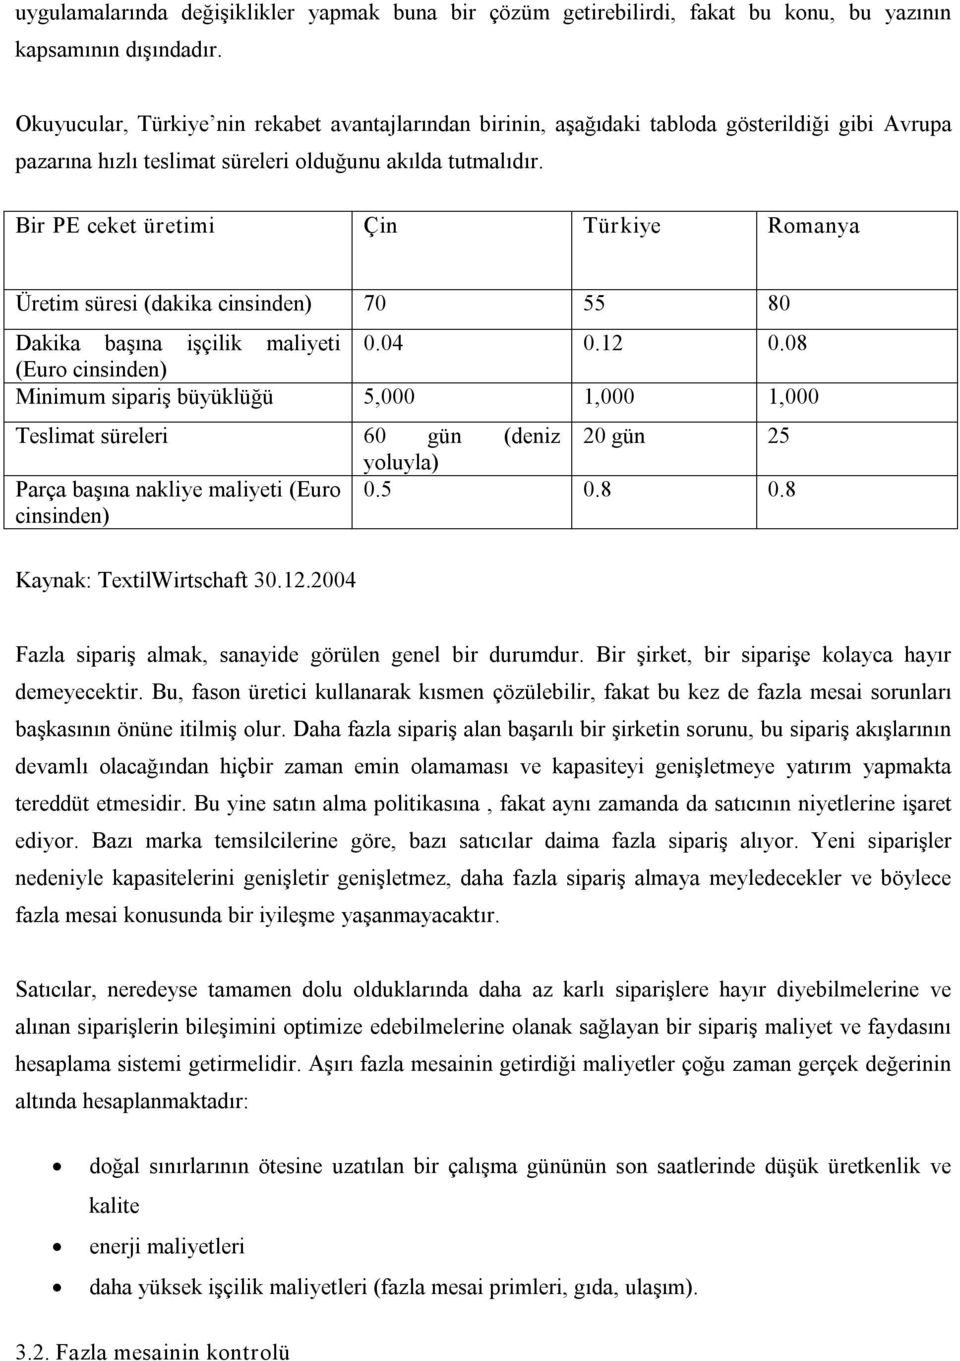 Bir PE ceket üretimi Çin Türkiye Romanya Üretim süresi (dakika cinsinden) 70 55 80 Dakika başına işçilik maliyeti 0.04 0.12 0.